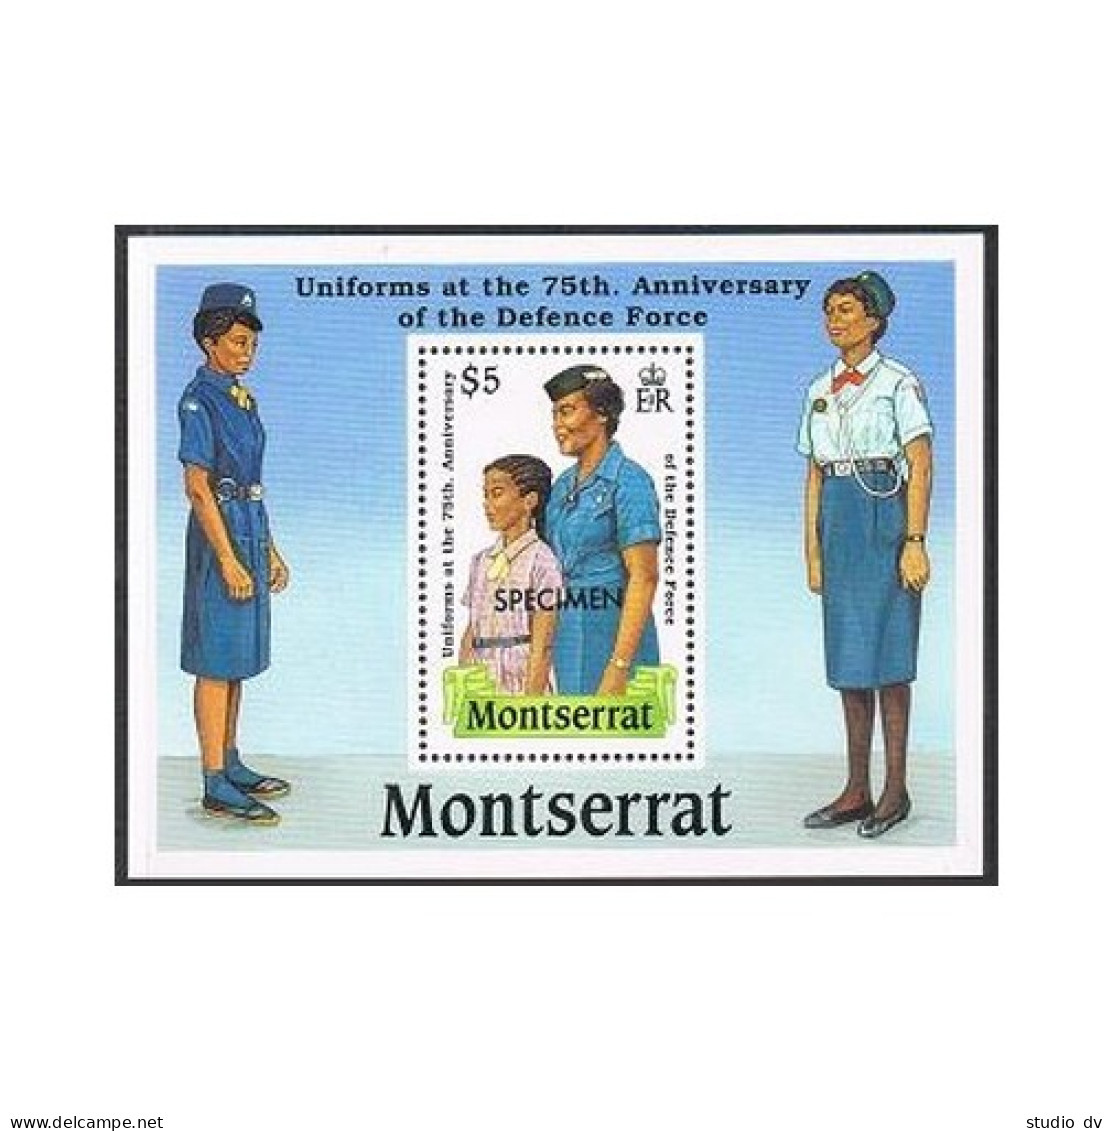 Montserrat 711 SPECIMEN,MNH.Michel 740 Bl.51. Uniforms.Defense Force-75,1989. - Montserrat